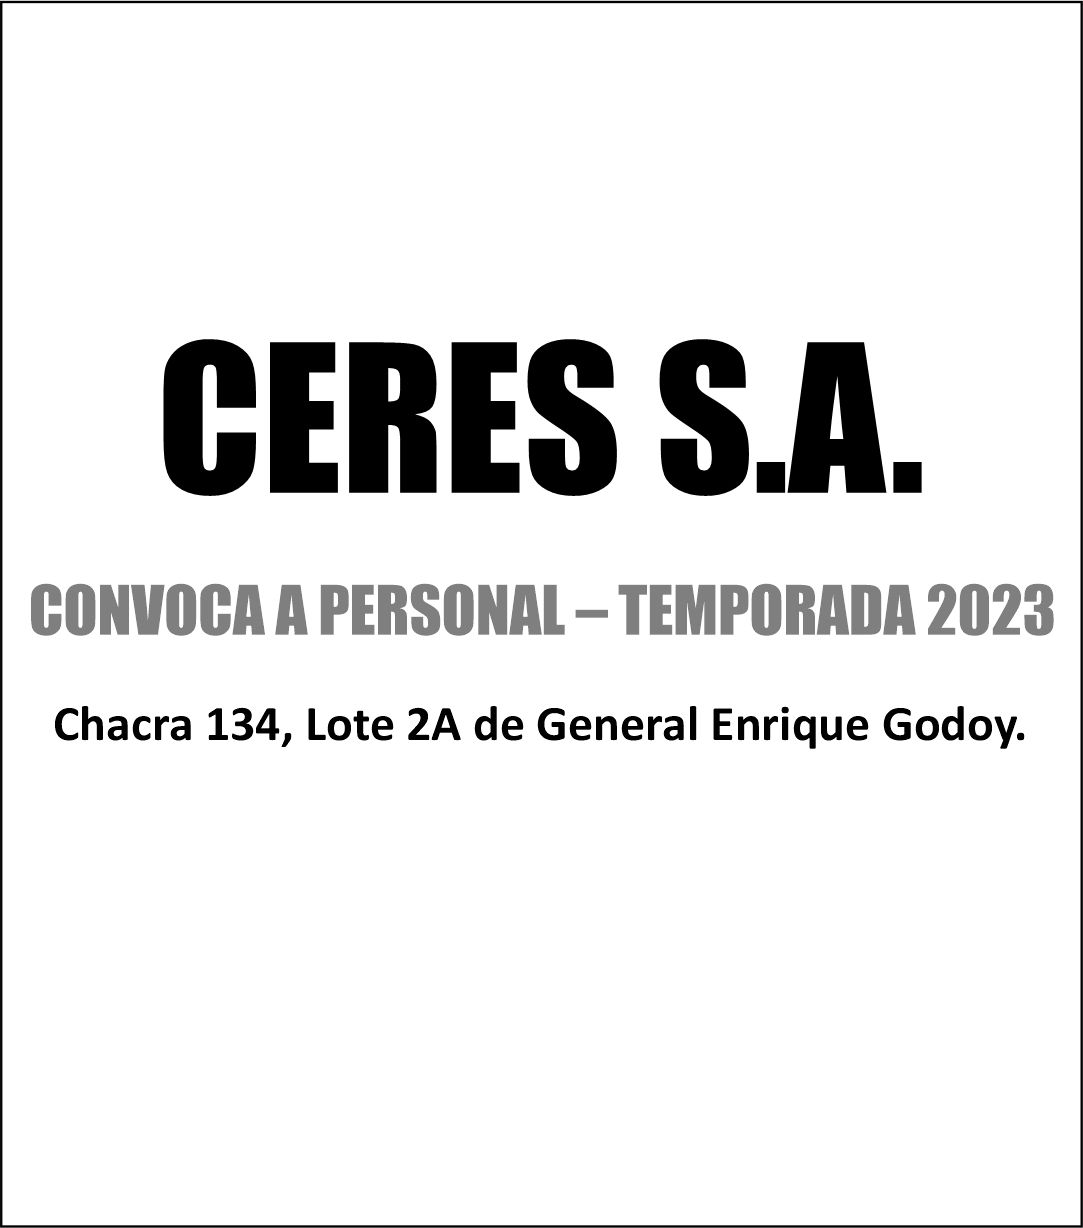 CERES S.A. CONVOCA A PERSONAL PARA TEMPORADA 2023